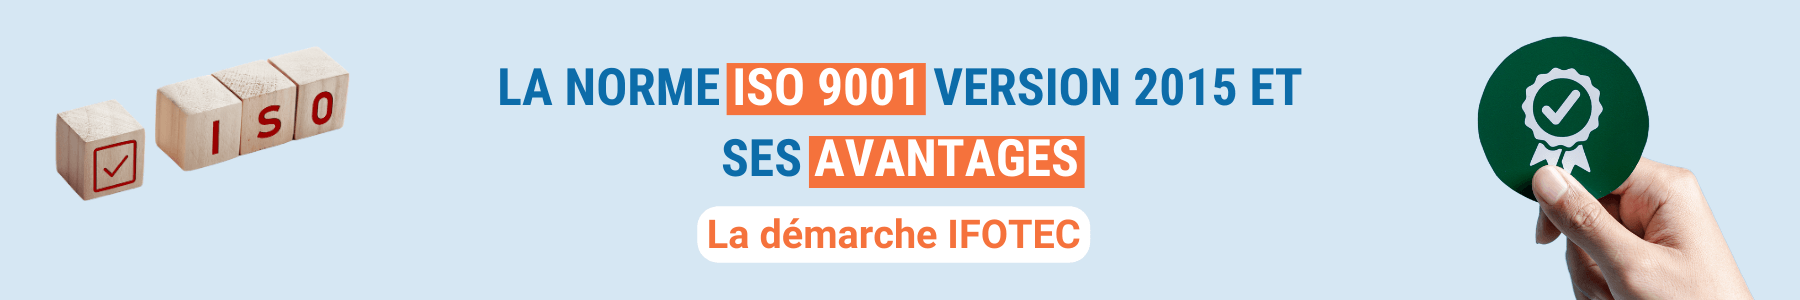 La norme ISO 9001:2015 et ses avantages. La démarche IFOTEC